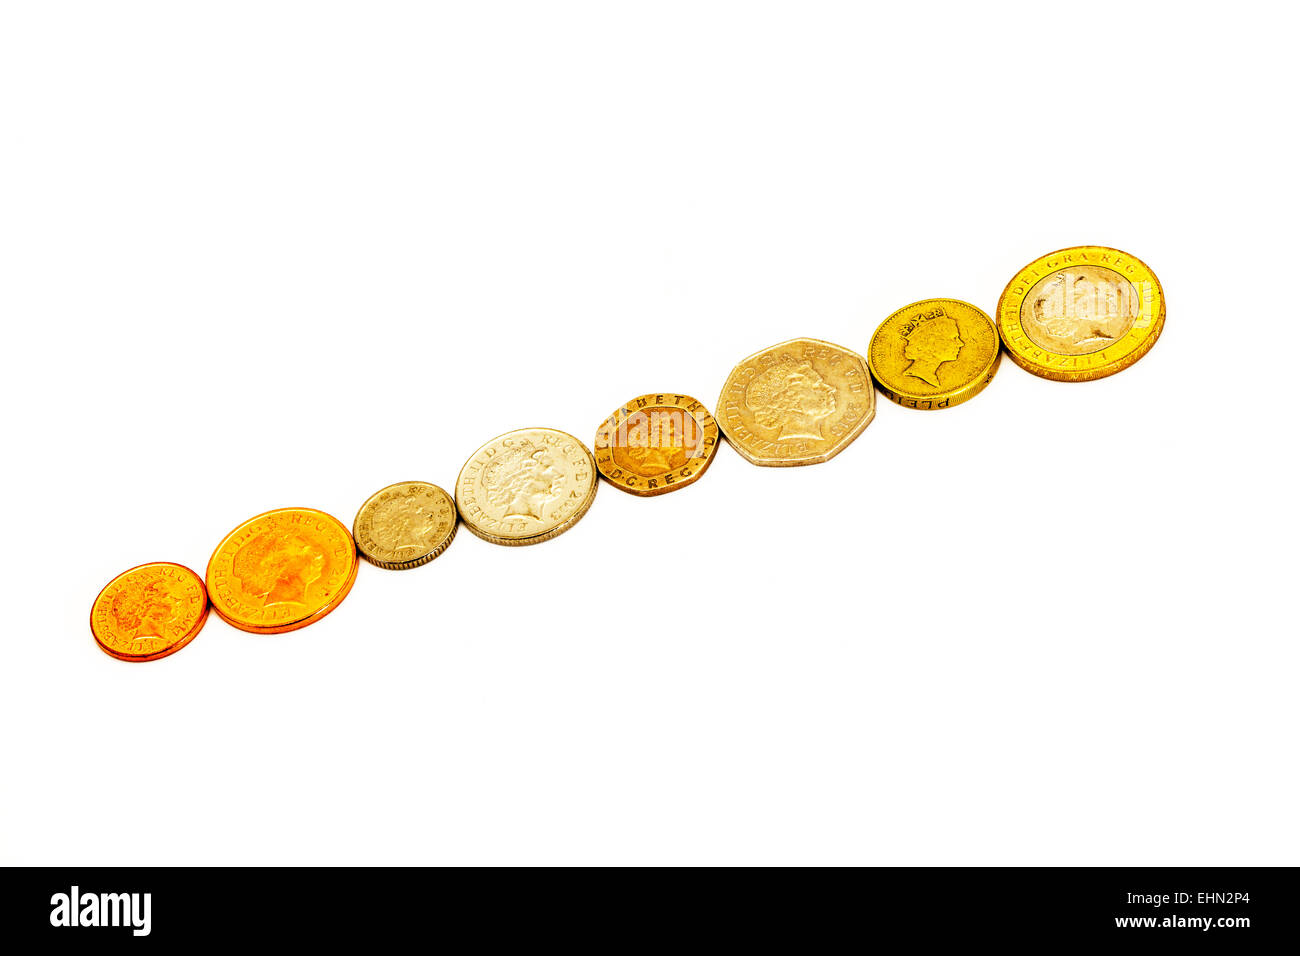 UK-Währung Münzen alle 8 Münzsammlung für 1 p Pence 2p 5 p 10p 20 p 50p £1 £2 isolierten ausgeschnittenen Ausschnitt weißen Hintergrund Linie Stockfoto